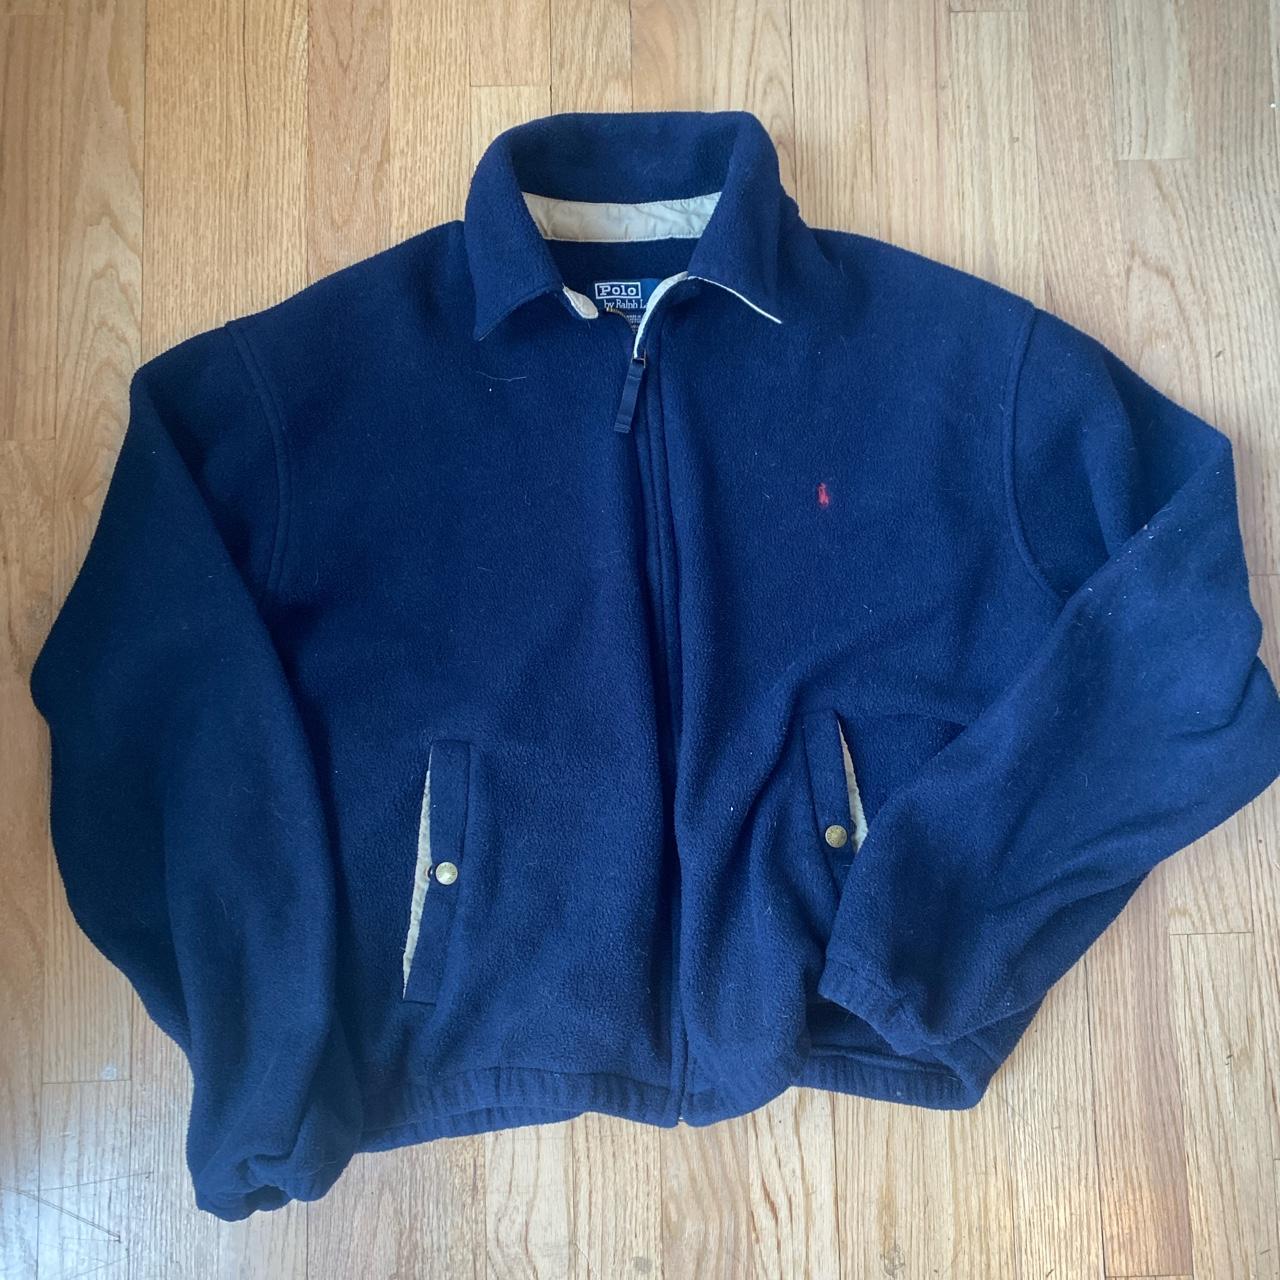 Polo Ralph Lauren Men's Navy and Cream Jacket | Depop